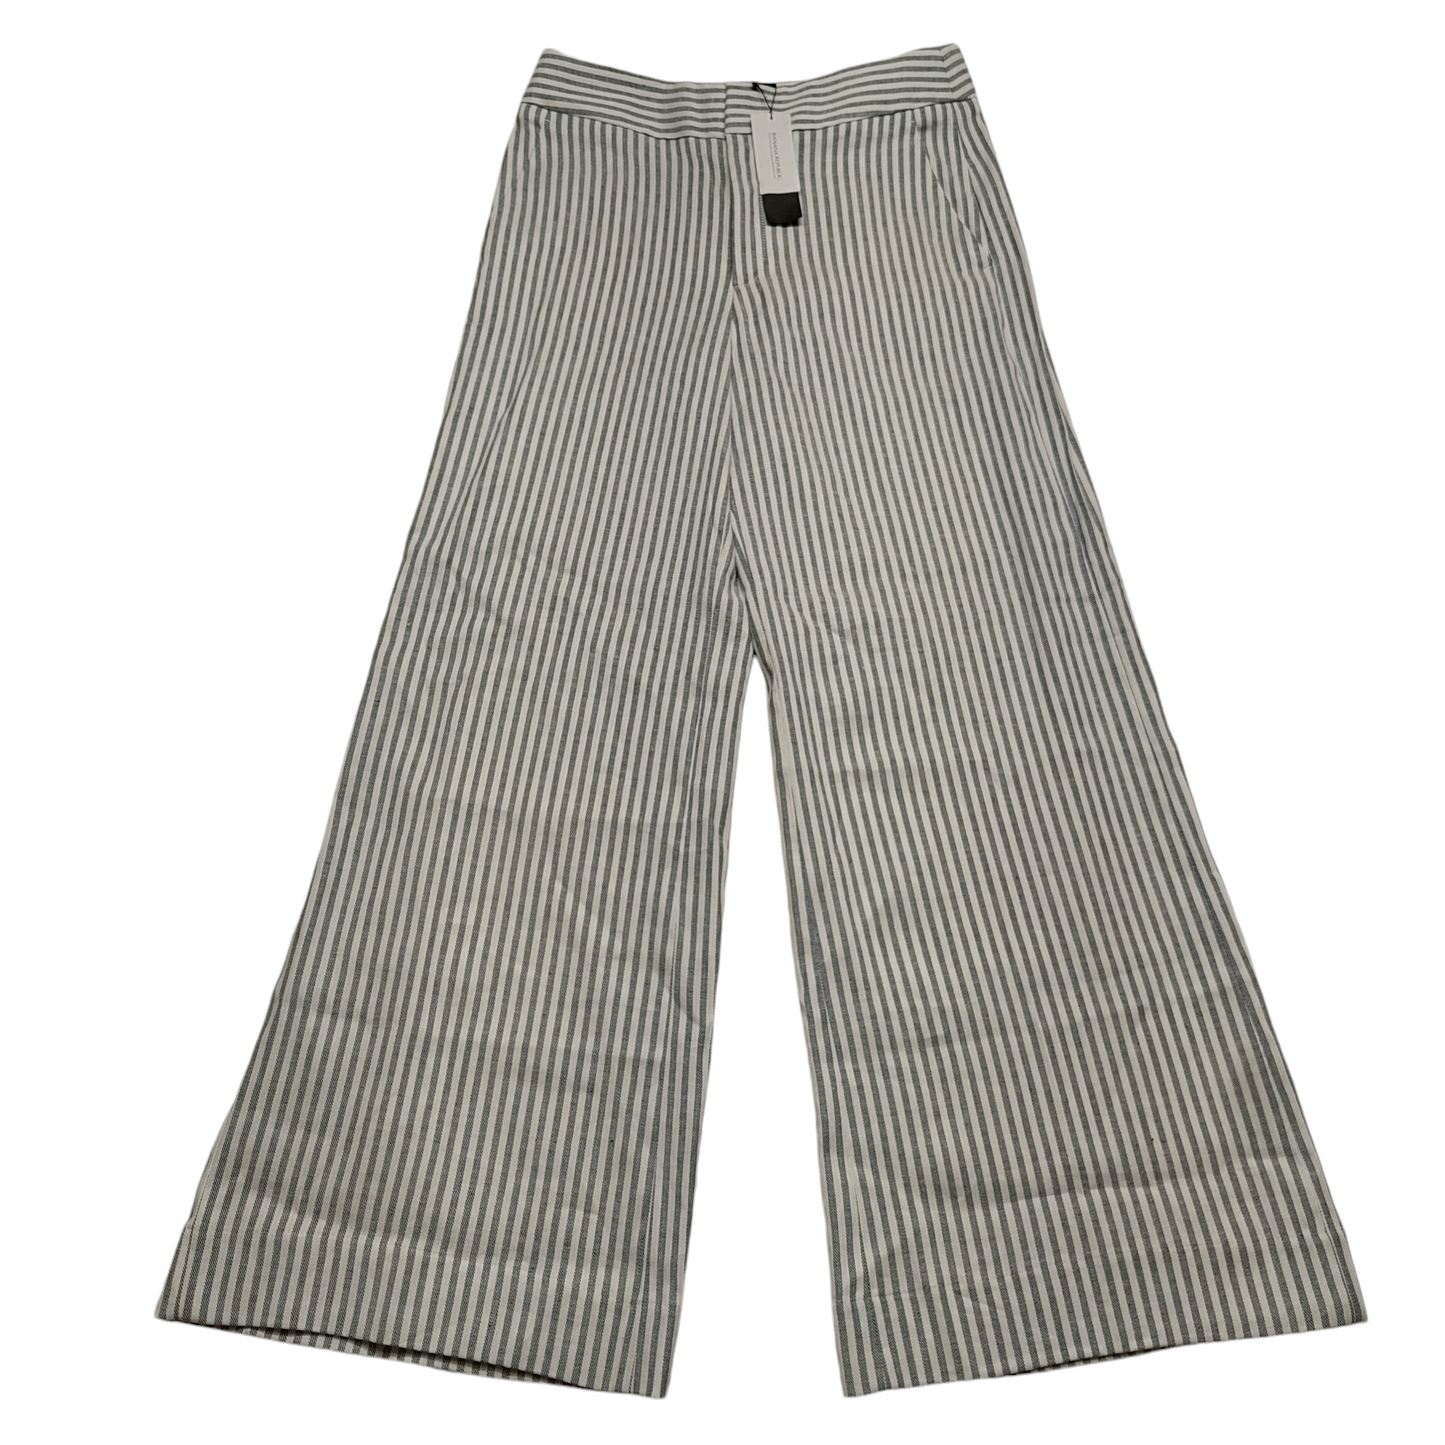 Grey & White Pants Dress Banana Republic, Size 8